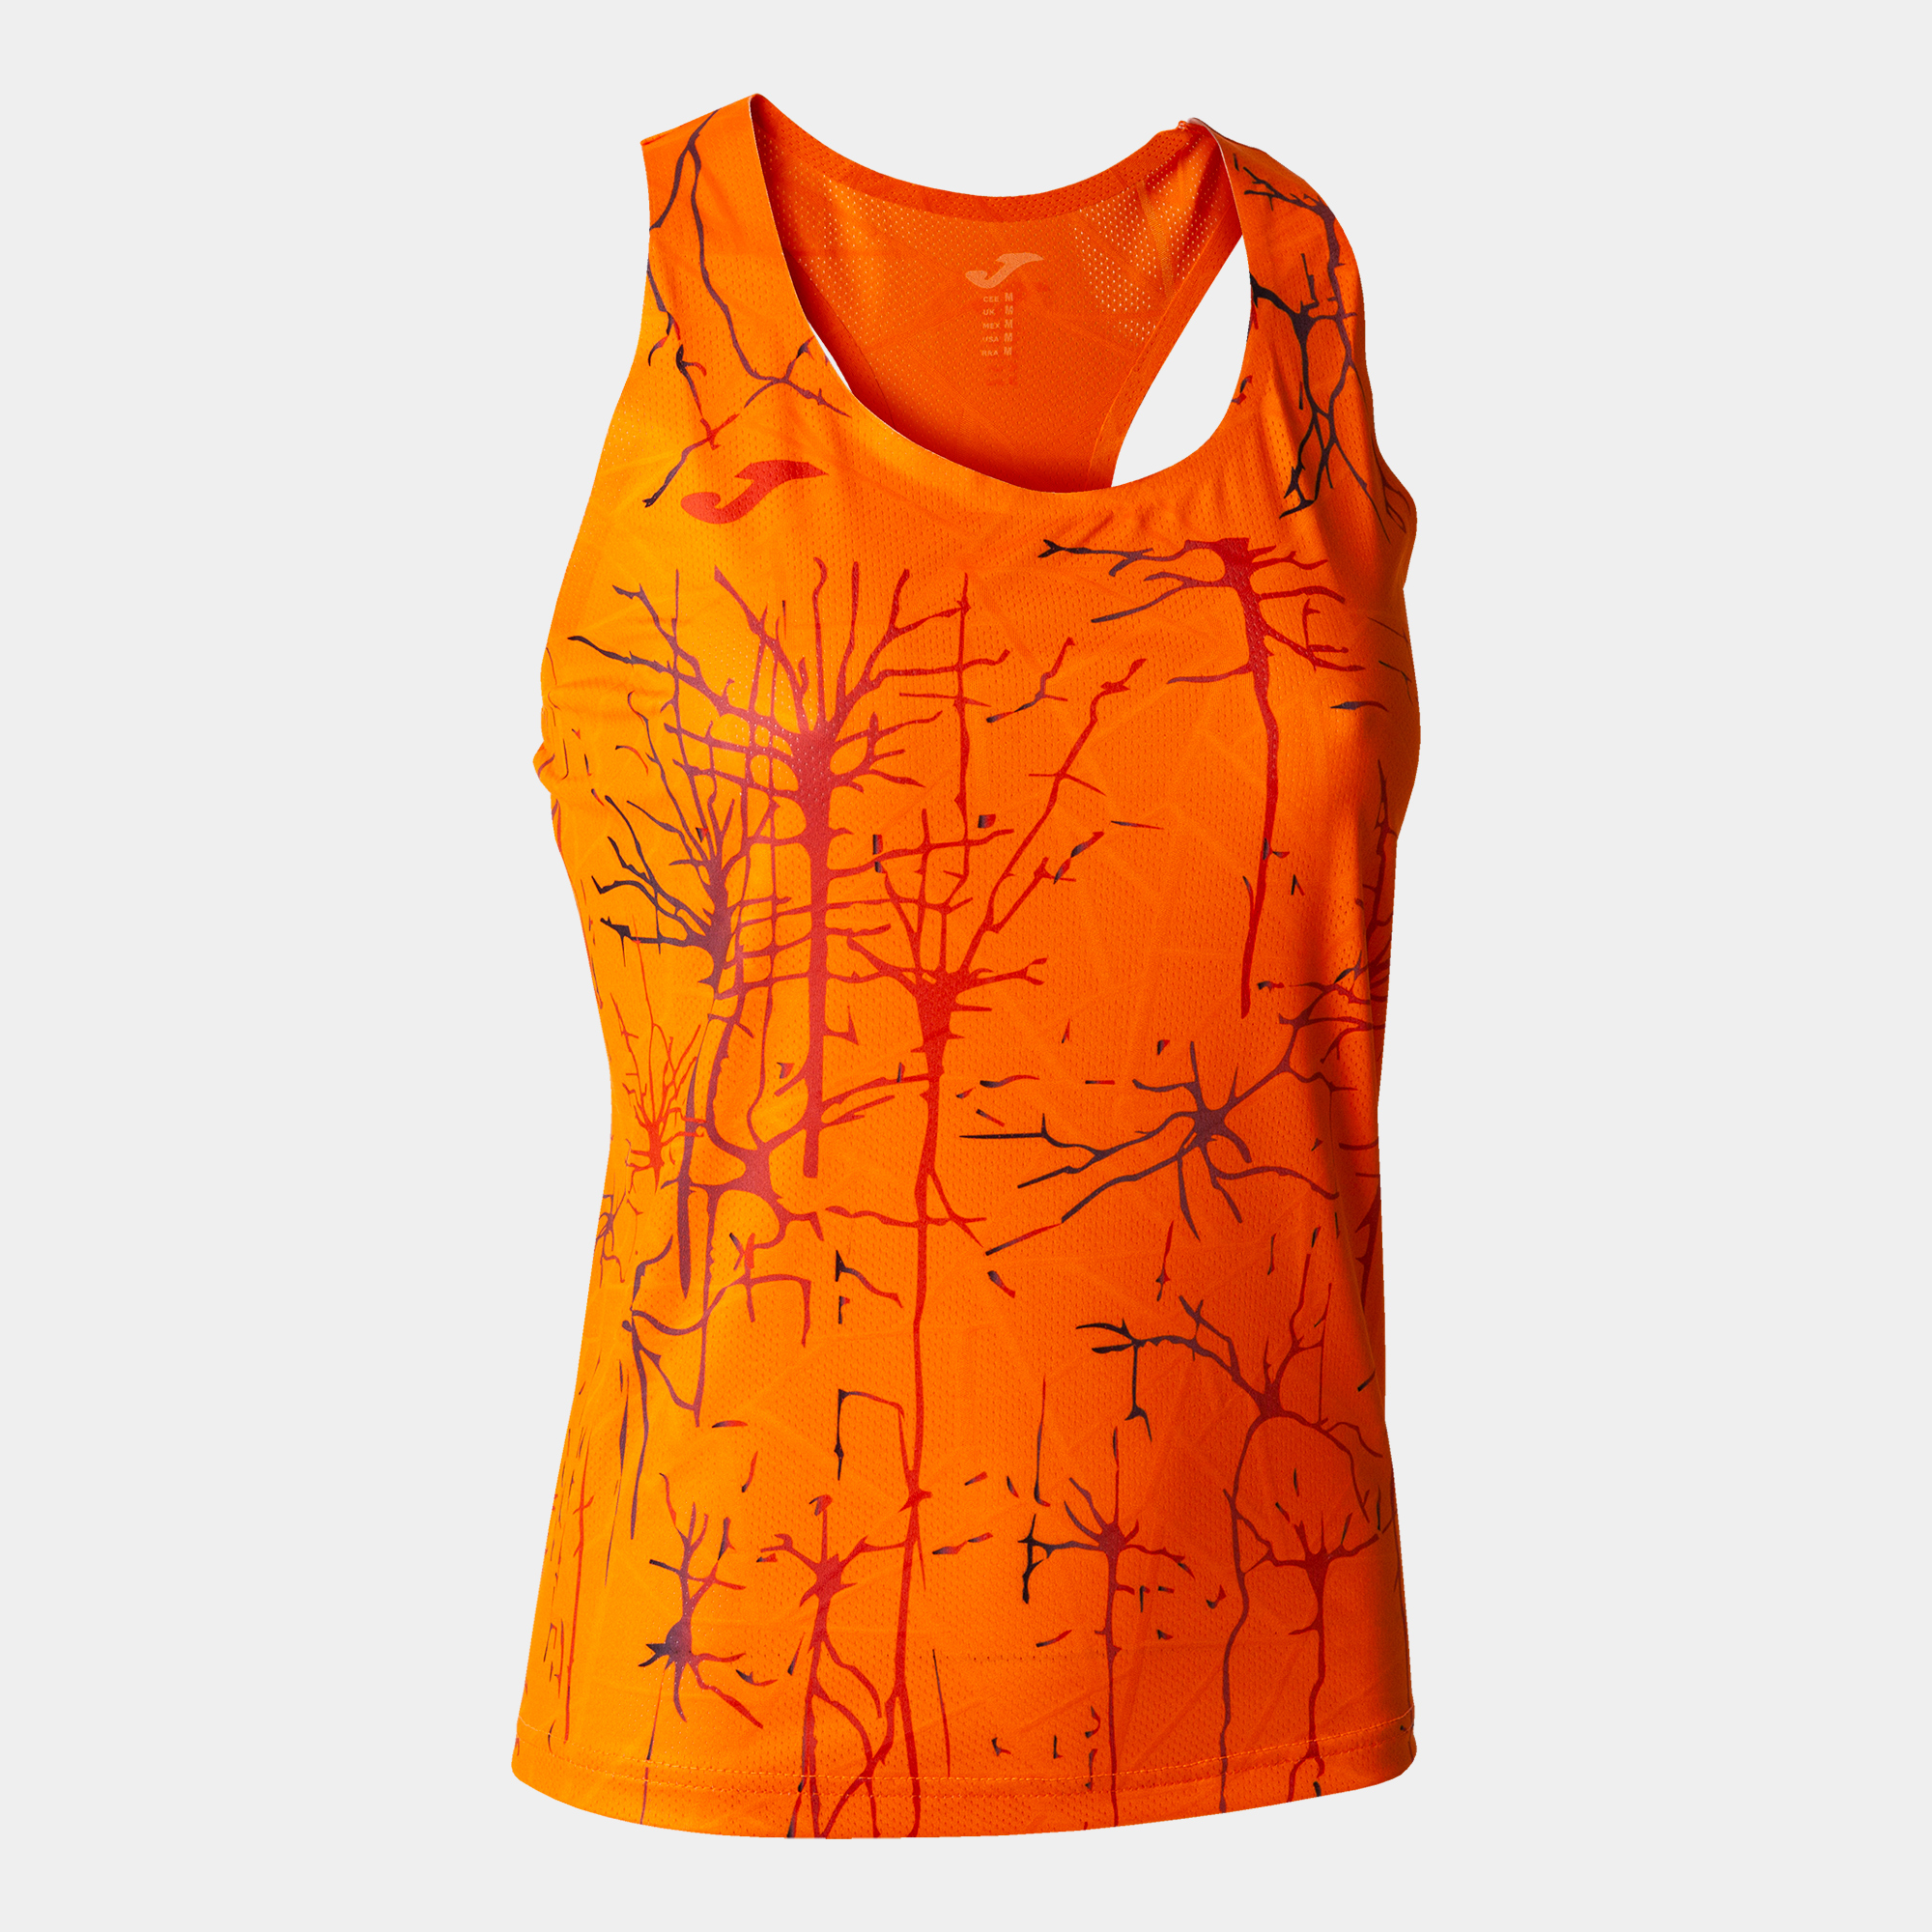 Camiseta Tirantes Joma Elite Ix Naranja - naranja - 